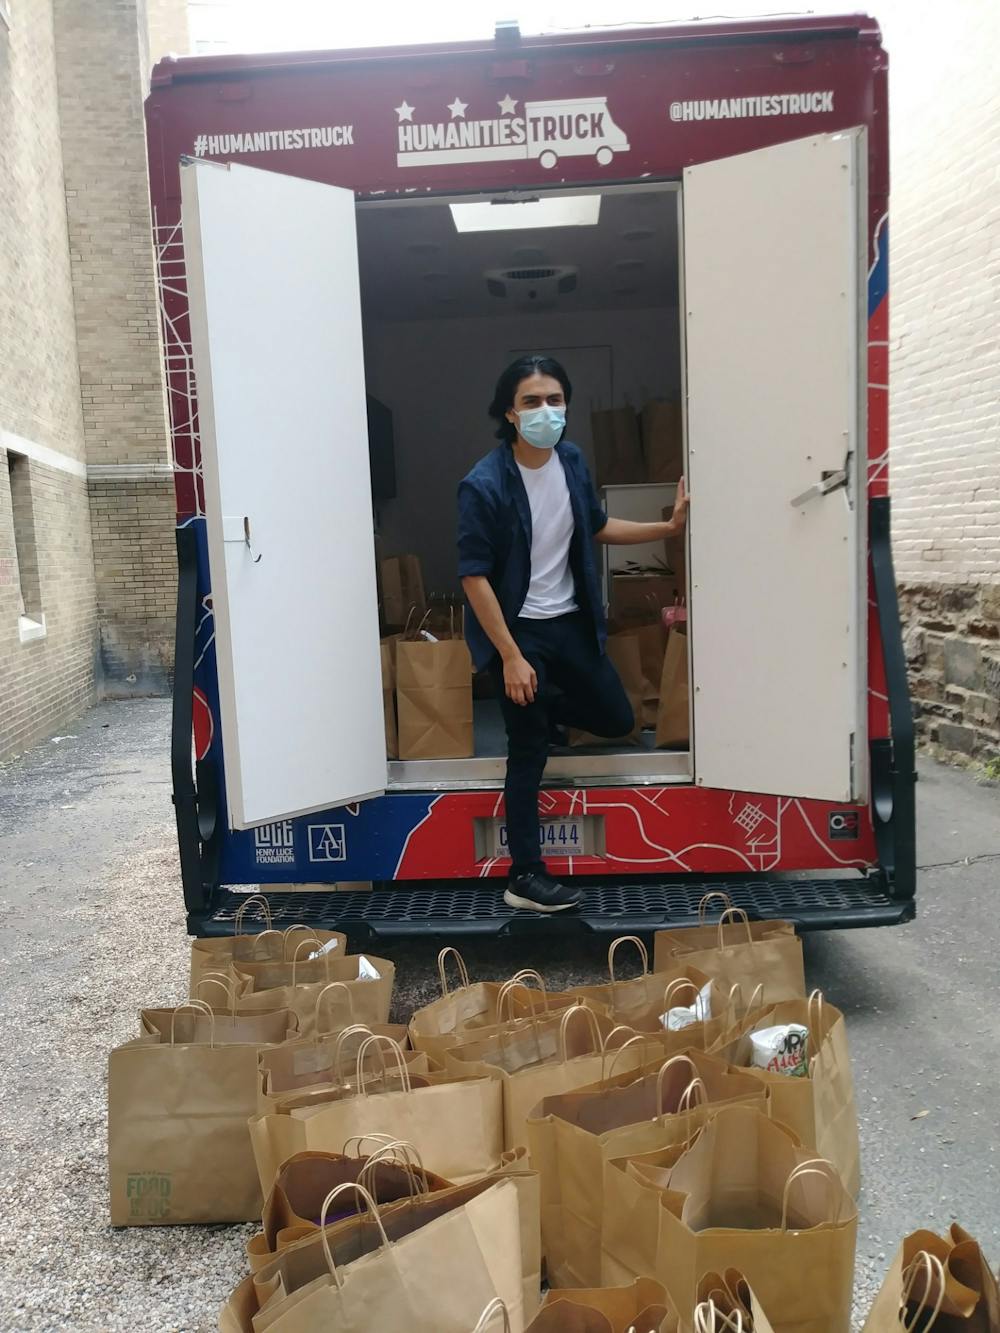 AU’s Humanities Truck brings food to DC communities